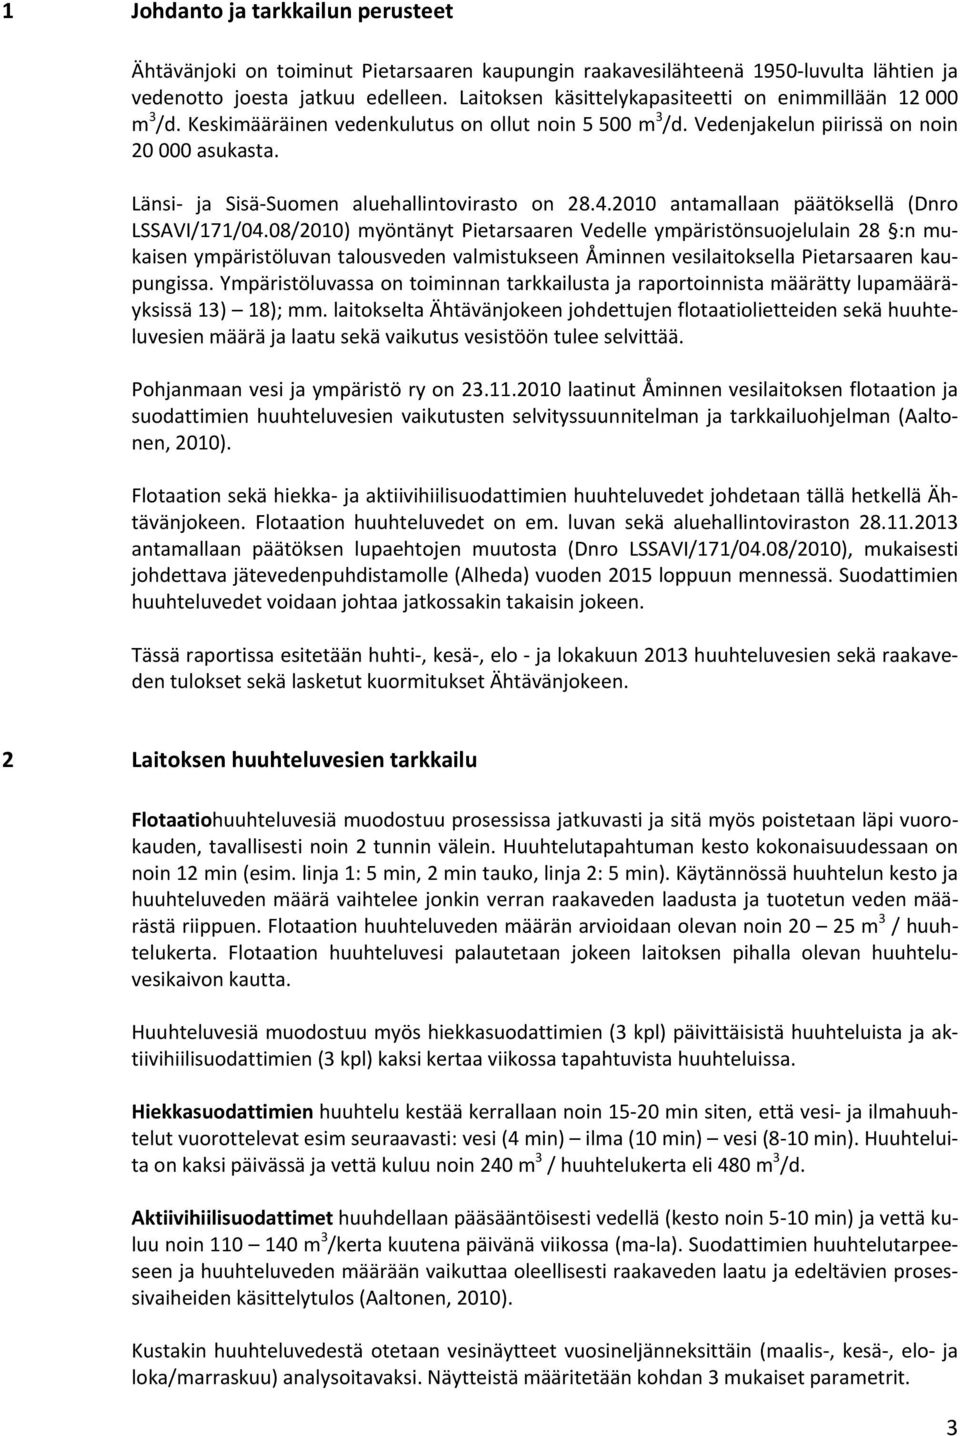 Länsi ja Sisä Suomen aluehallintovirasto on 28.4.2010 antamallaan päätöksellä (Dnro LSSAVI/171/04.